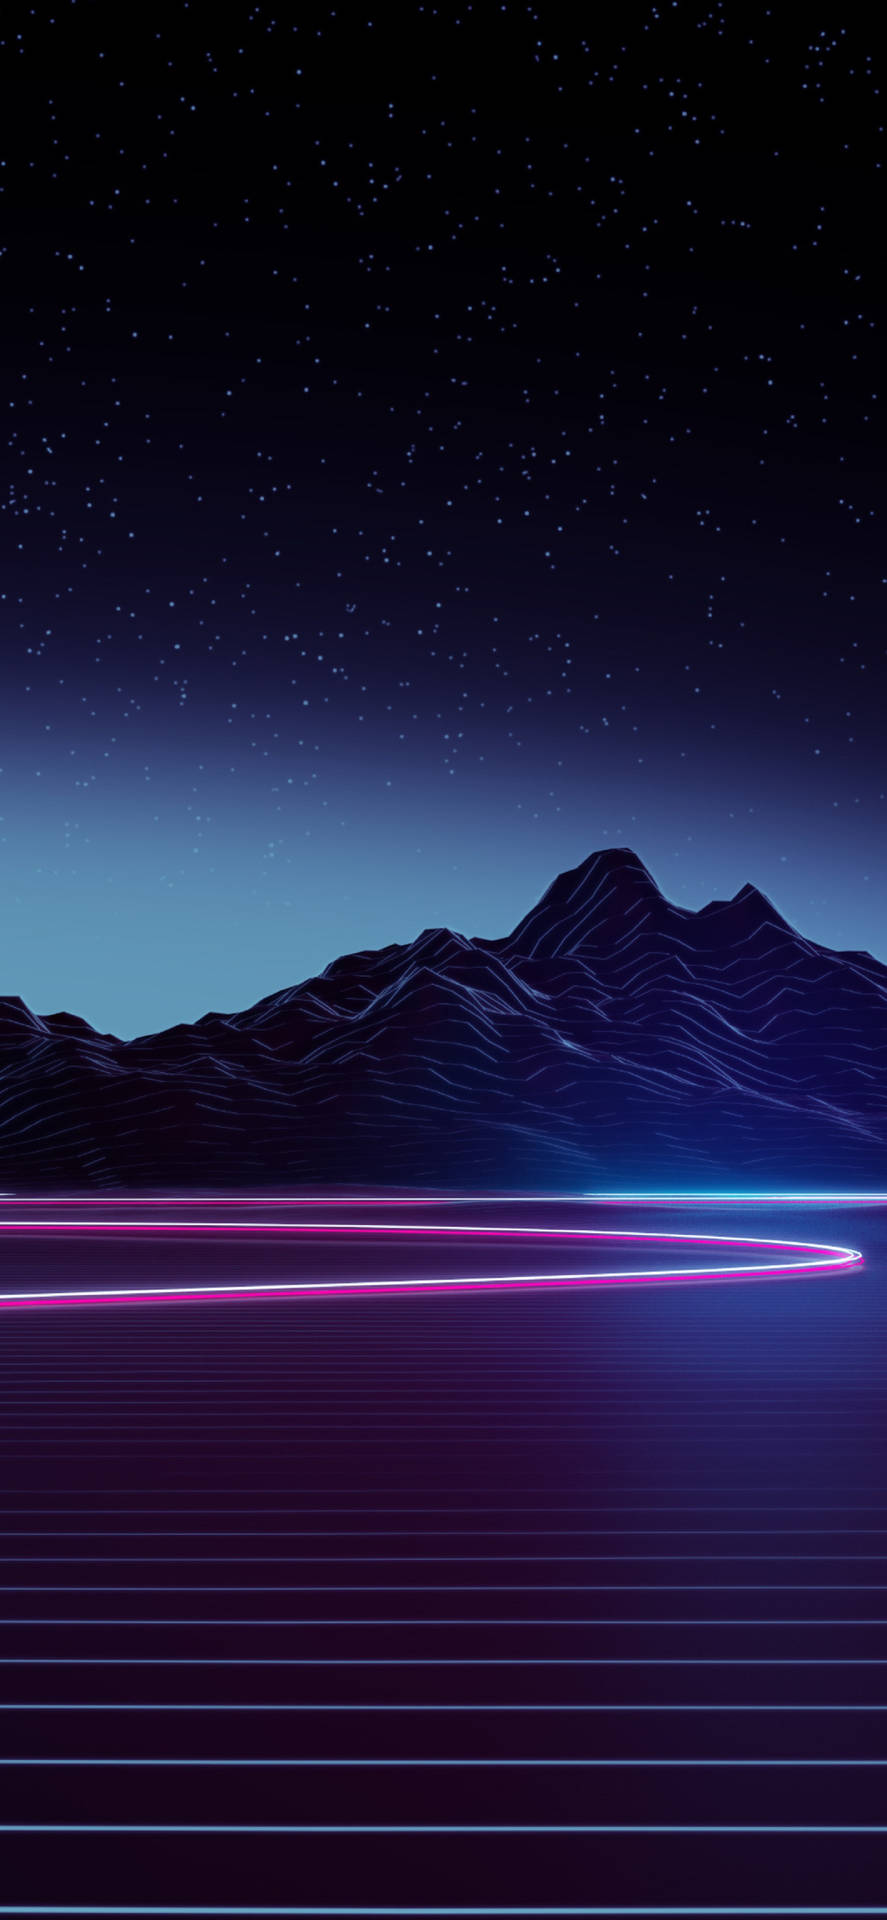 4k Neon Iphone Mountain Highway Wallpaper